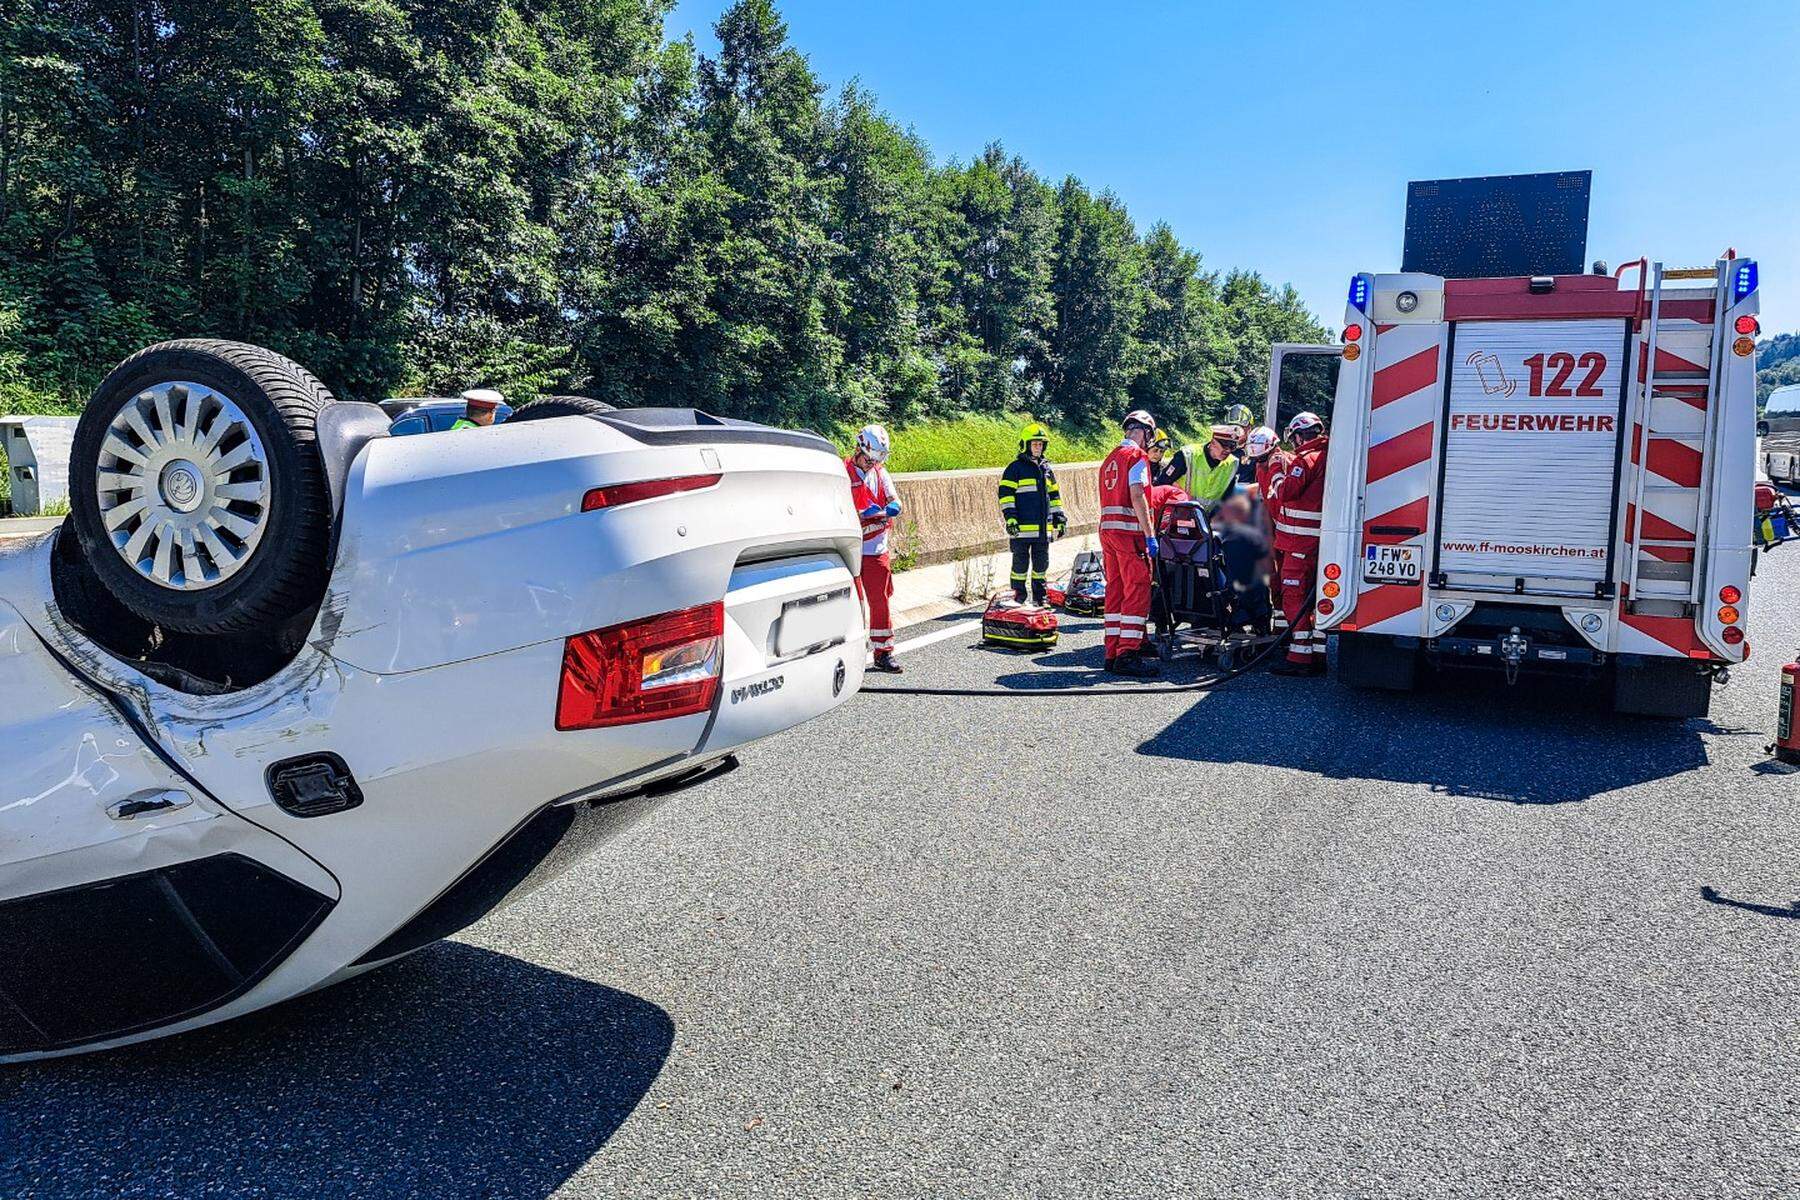 Auf der Autobahn: Auto überschlug sich vor dem Assingbergtunnel - Lenker gerettet